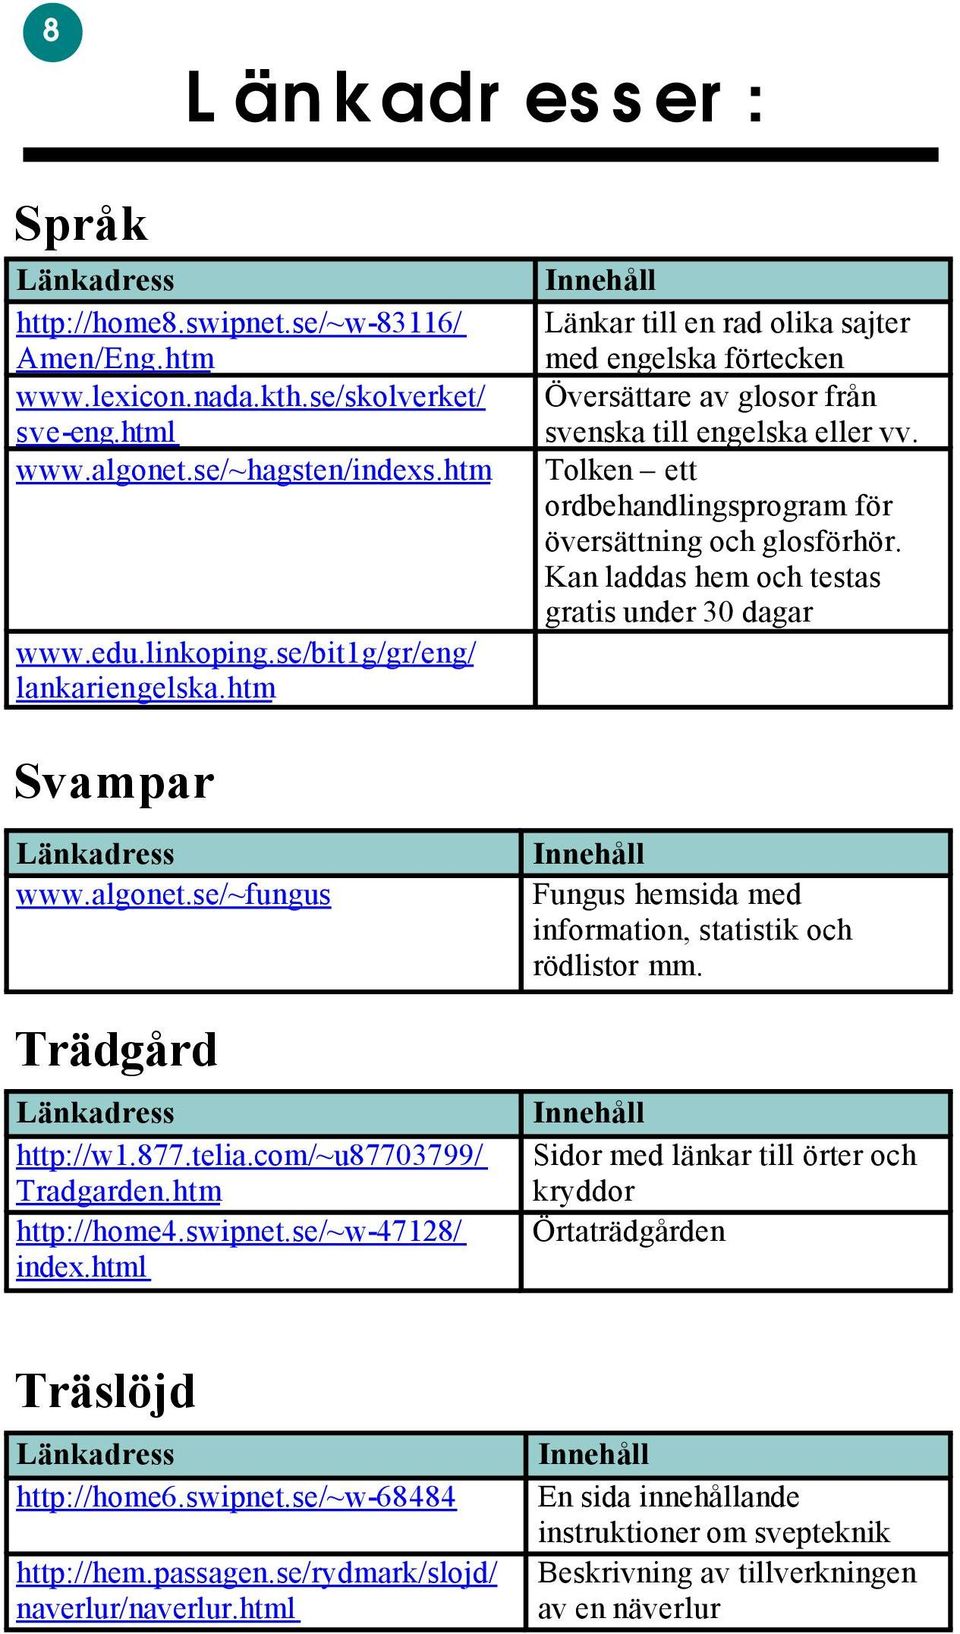 Kan laddas hem och testas gratis under 30 dagar Svampar www.algonet.se/~fungus Trädgård http://w1.877.telia.com/~u87703799/ Tradgarden.htm http://home4.swipnet.se/~w-47128/ index.